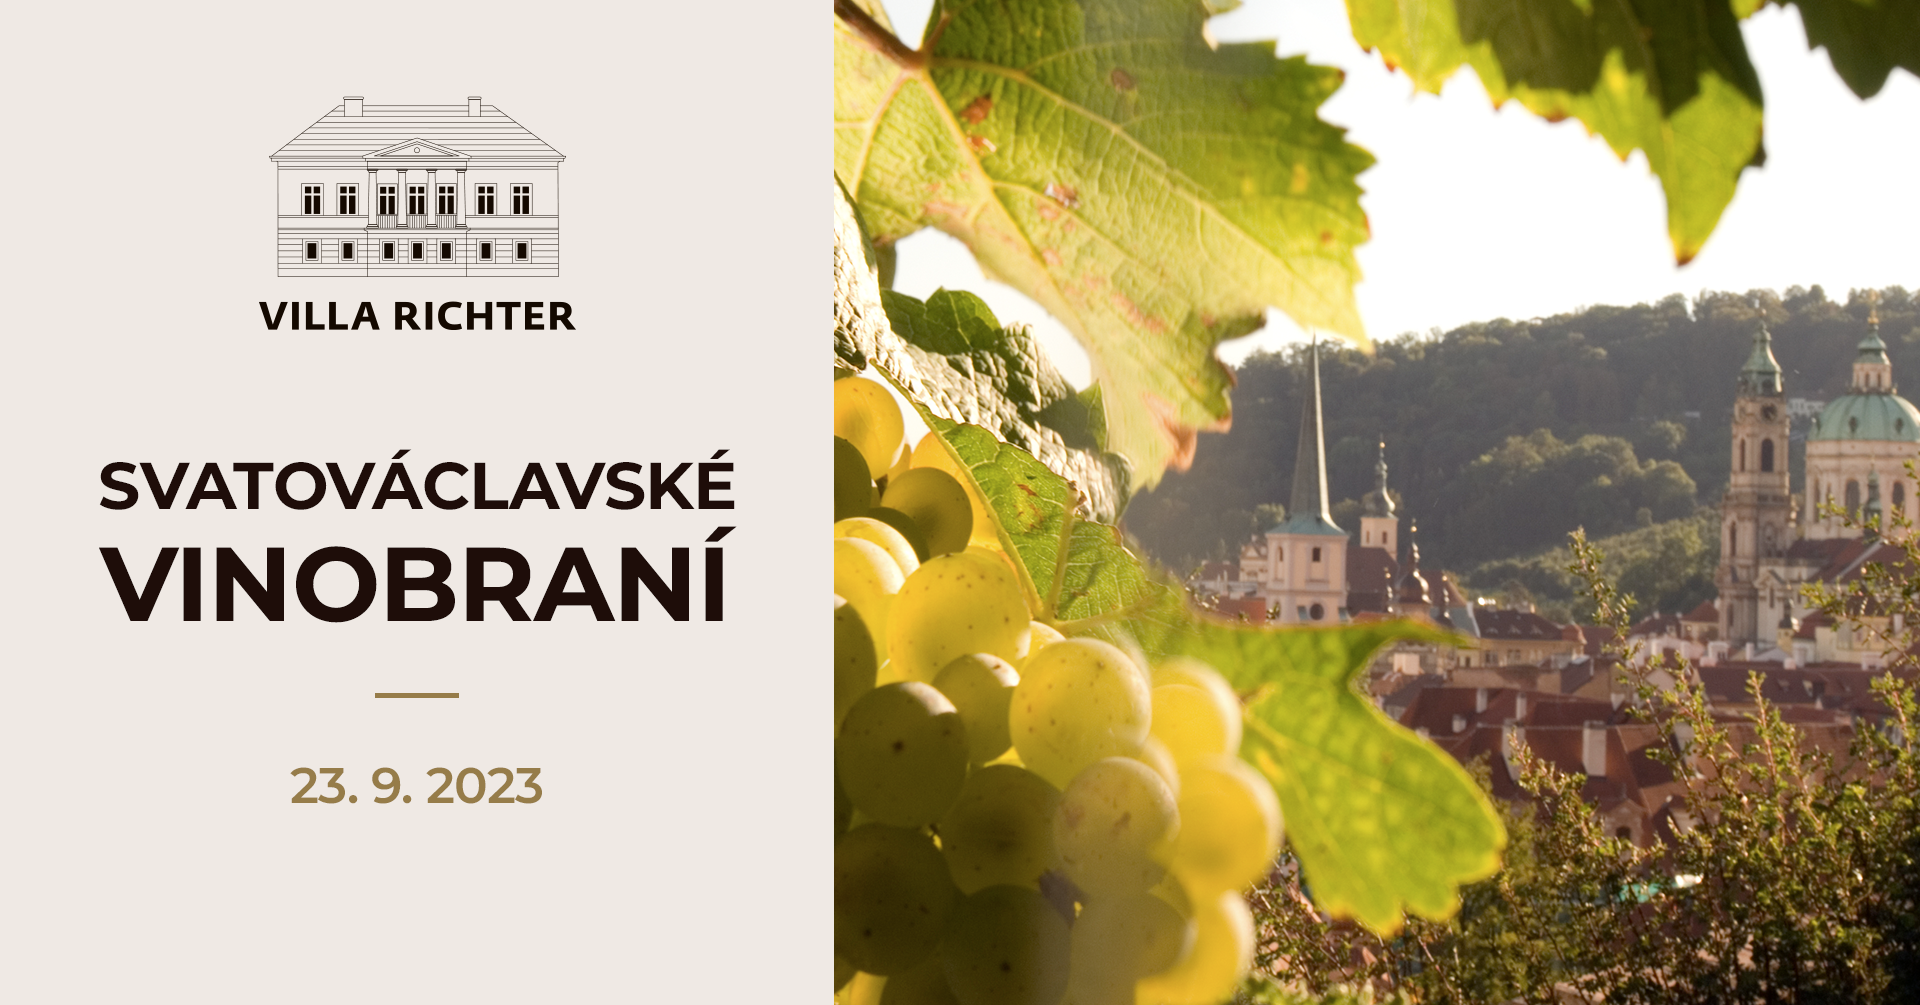 Svatováclavské vinobraní | Praha | 23. 9. 2023